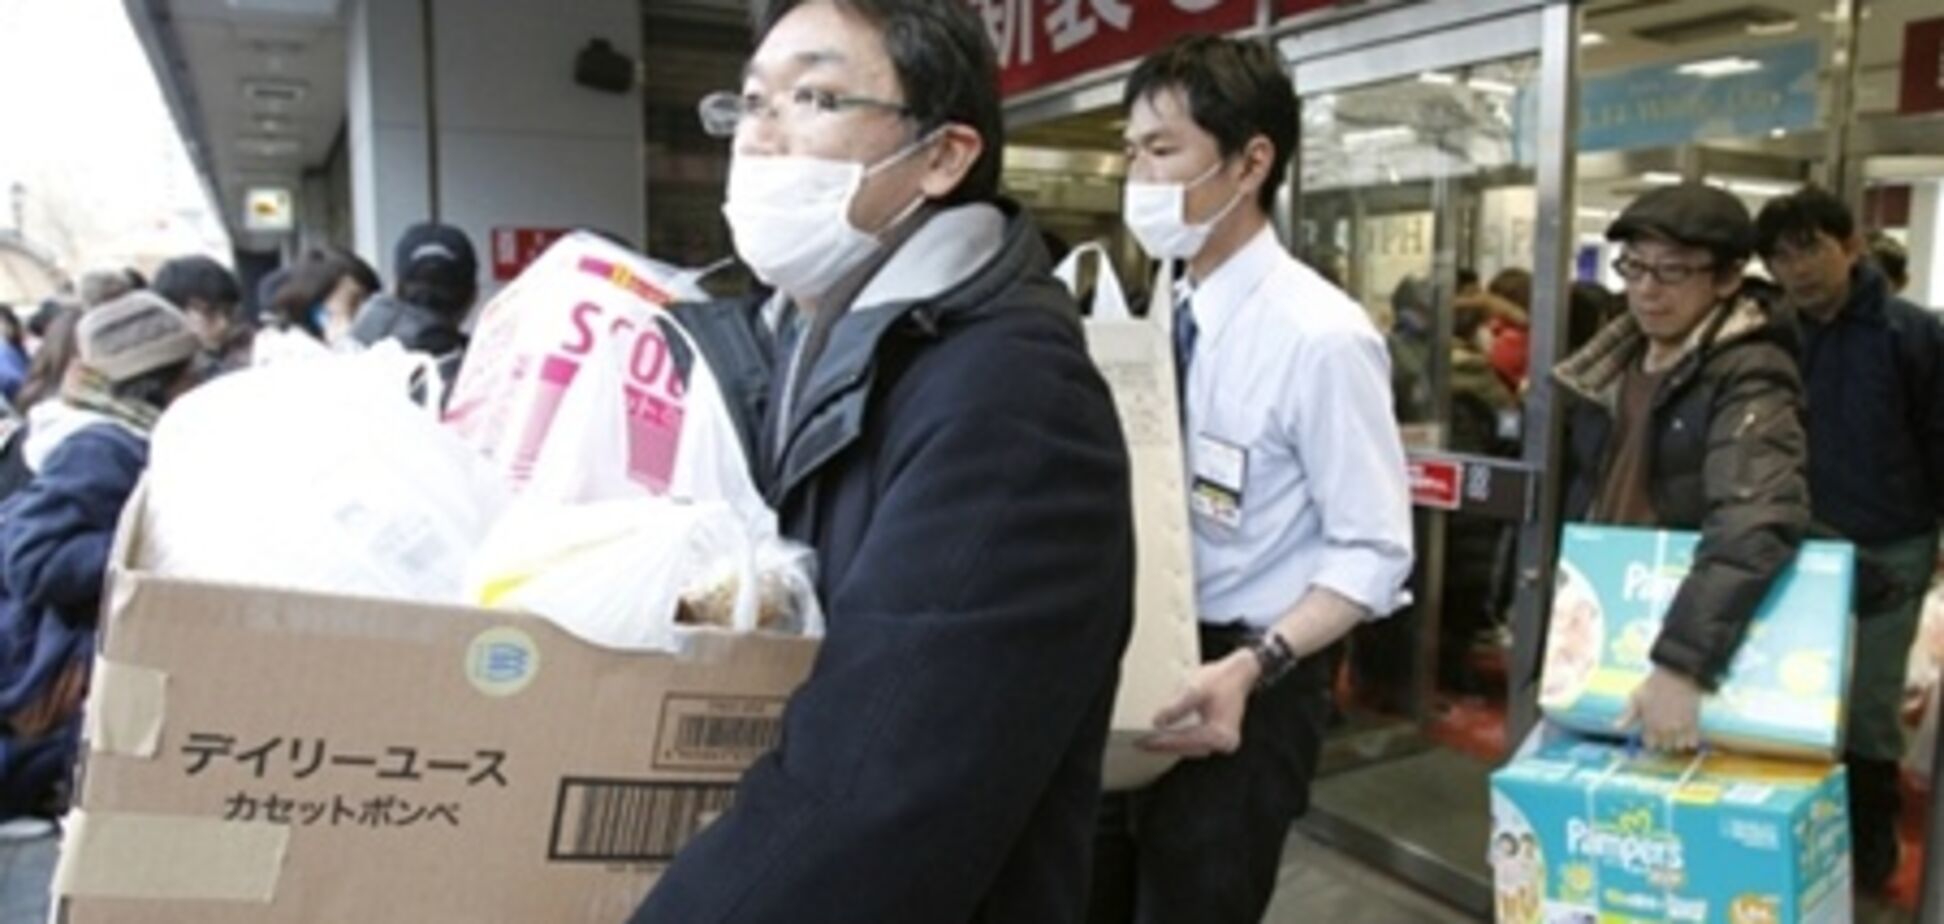 Альтруизм по-японски: дефицитные товары подешевели и ни одного случая мародерства